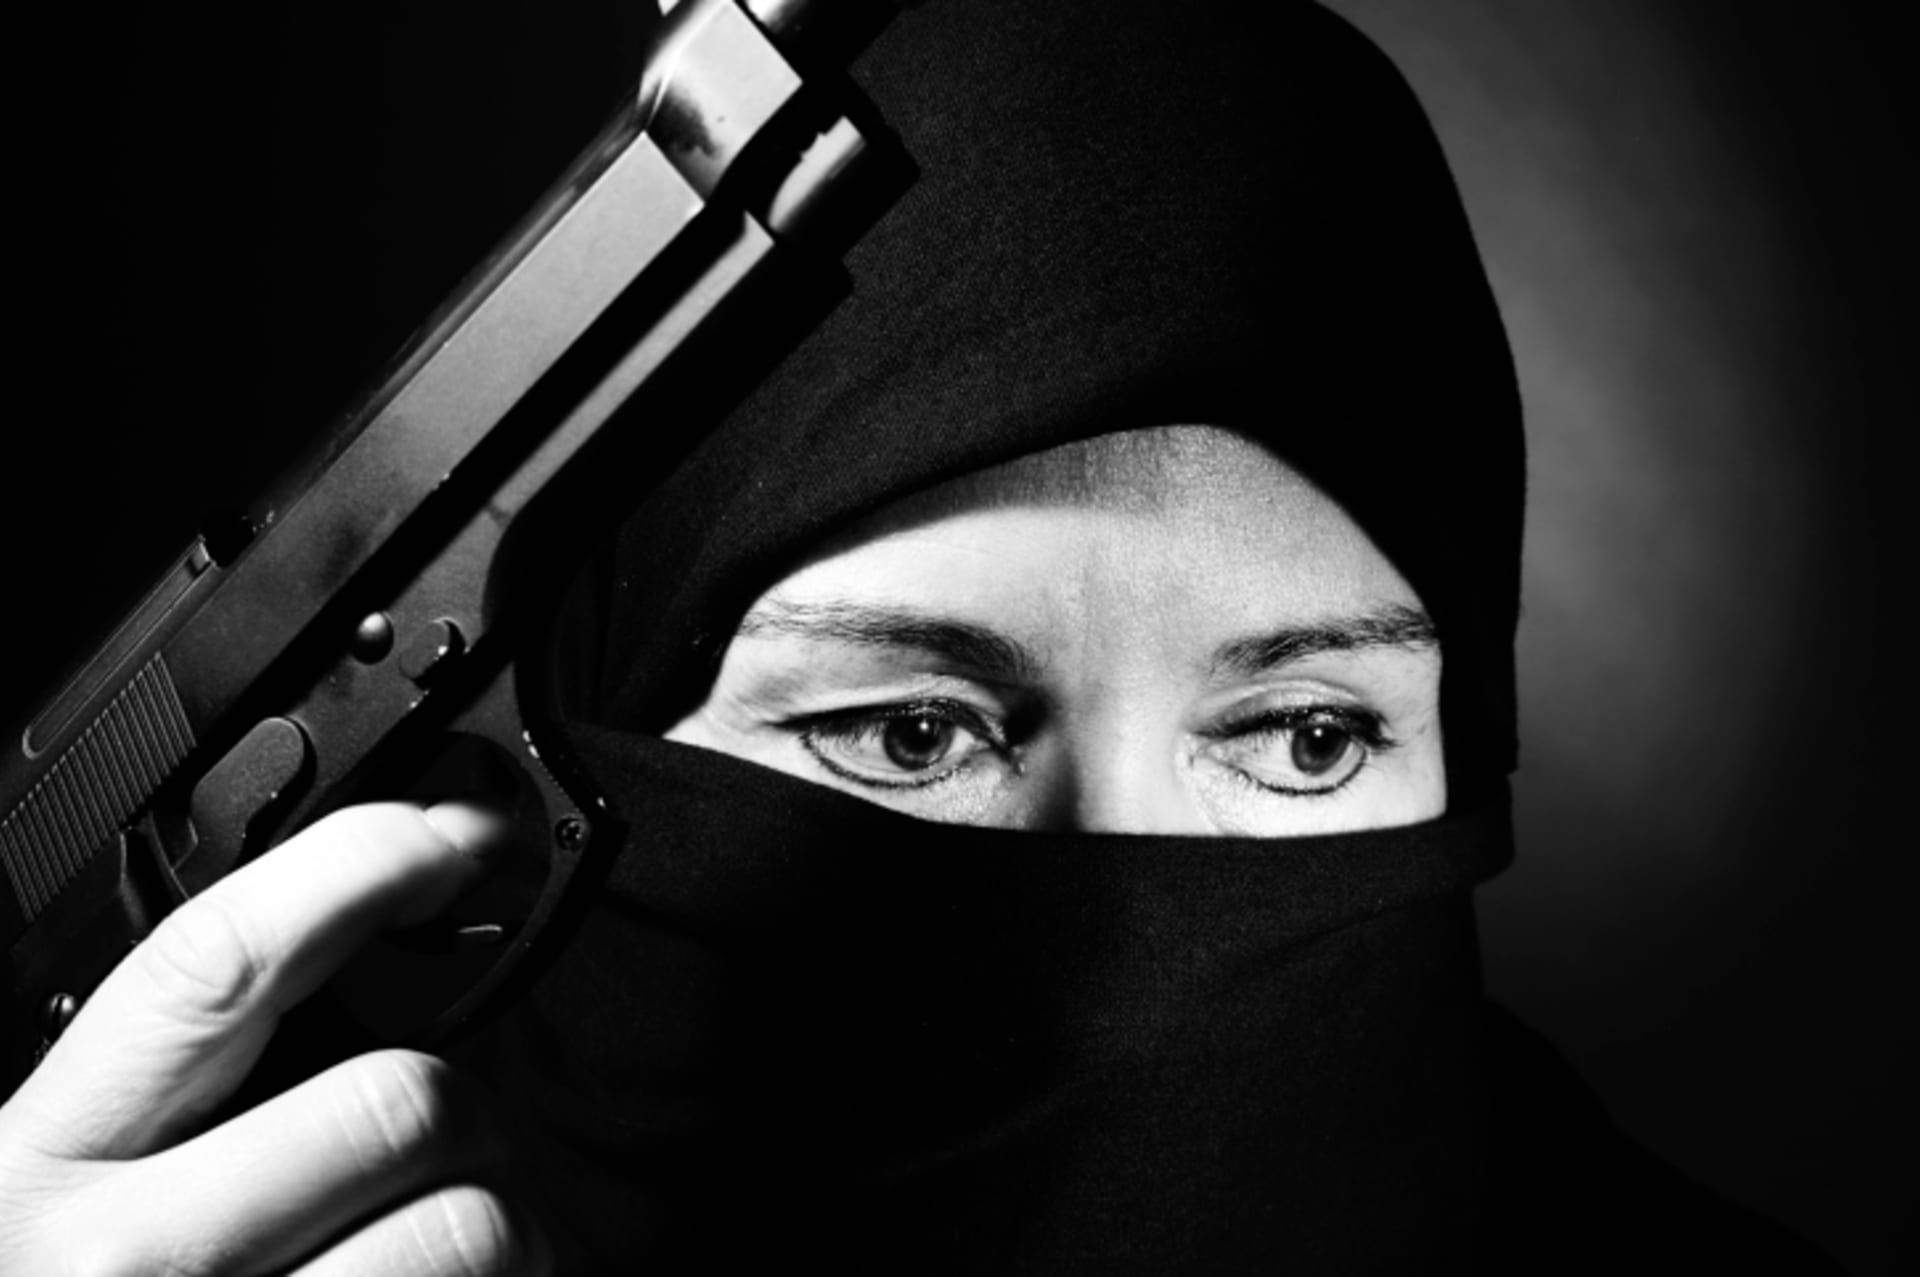 Ženy podvědomě nepovažujeme za nebezpečné. Tím méně od nich čekáme teroristický útok.